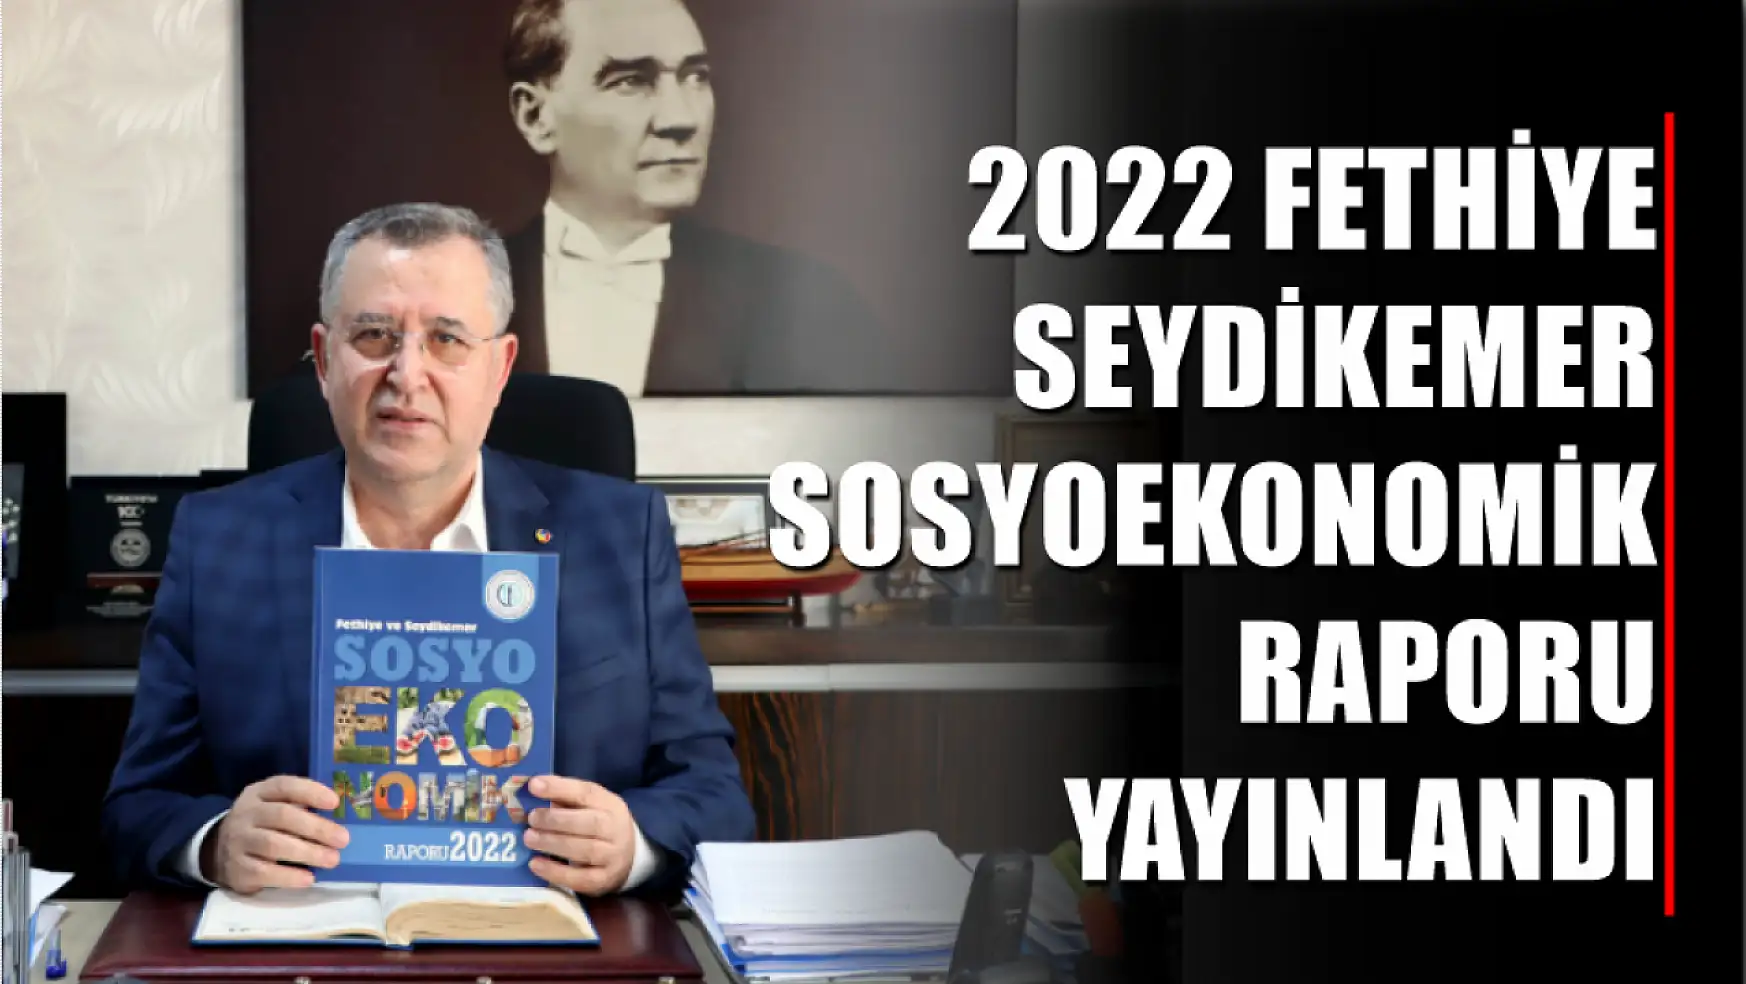 2022 Fethiye Seydikemer Sosyoekonomik Raporu Yayınlandı